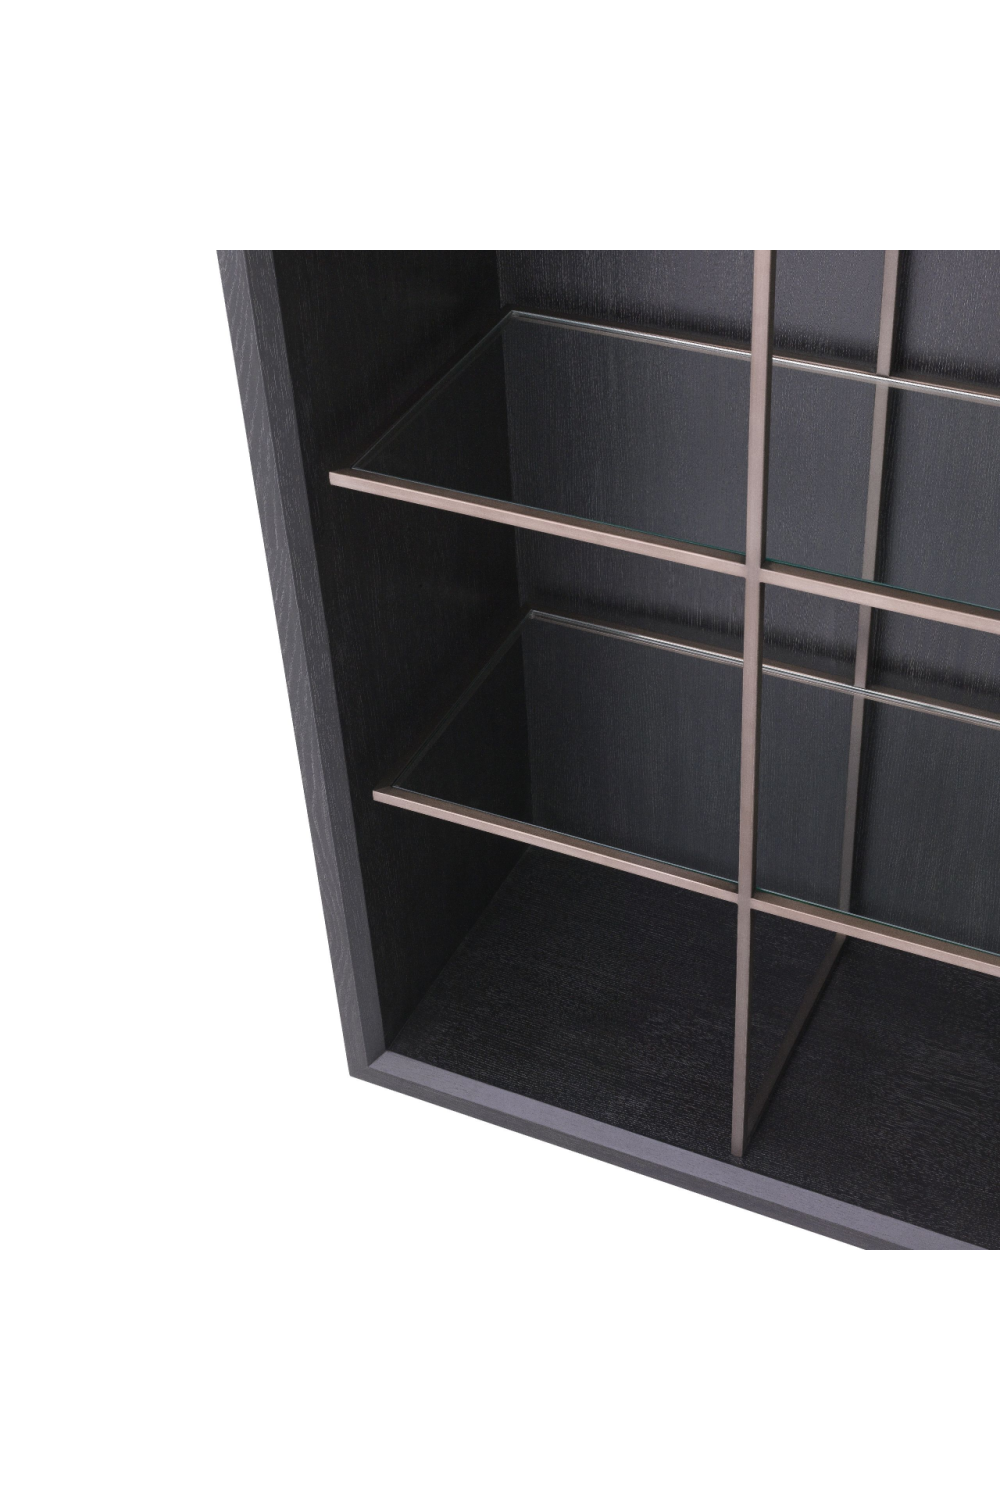 Bronze 4-Shelf Bookcase | Eichholtz Hennessey | OROA.com